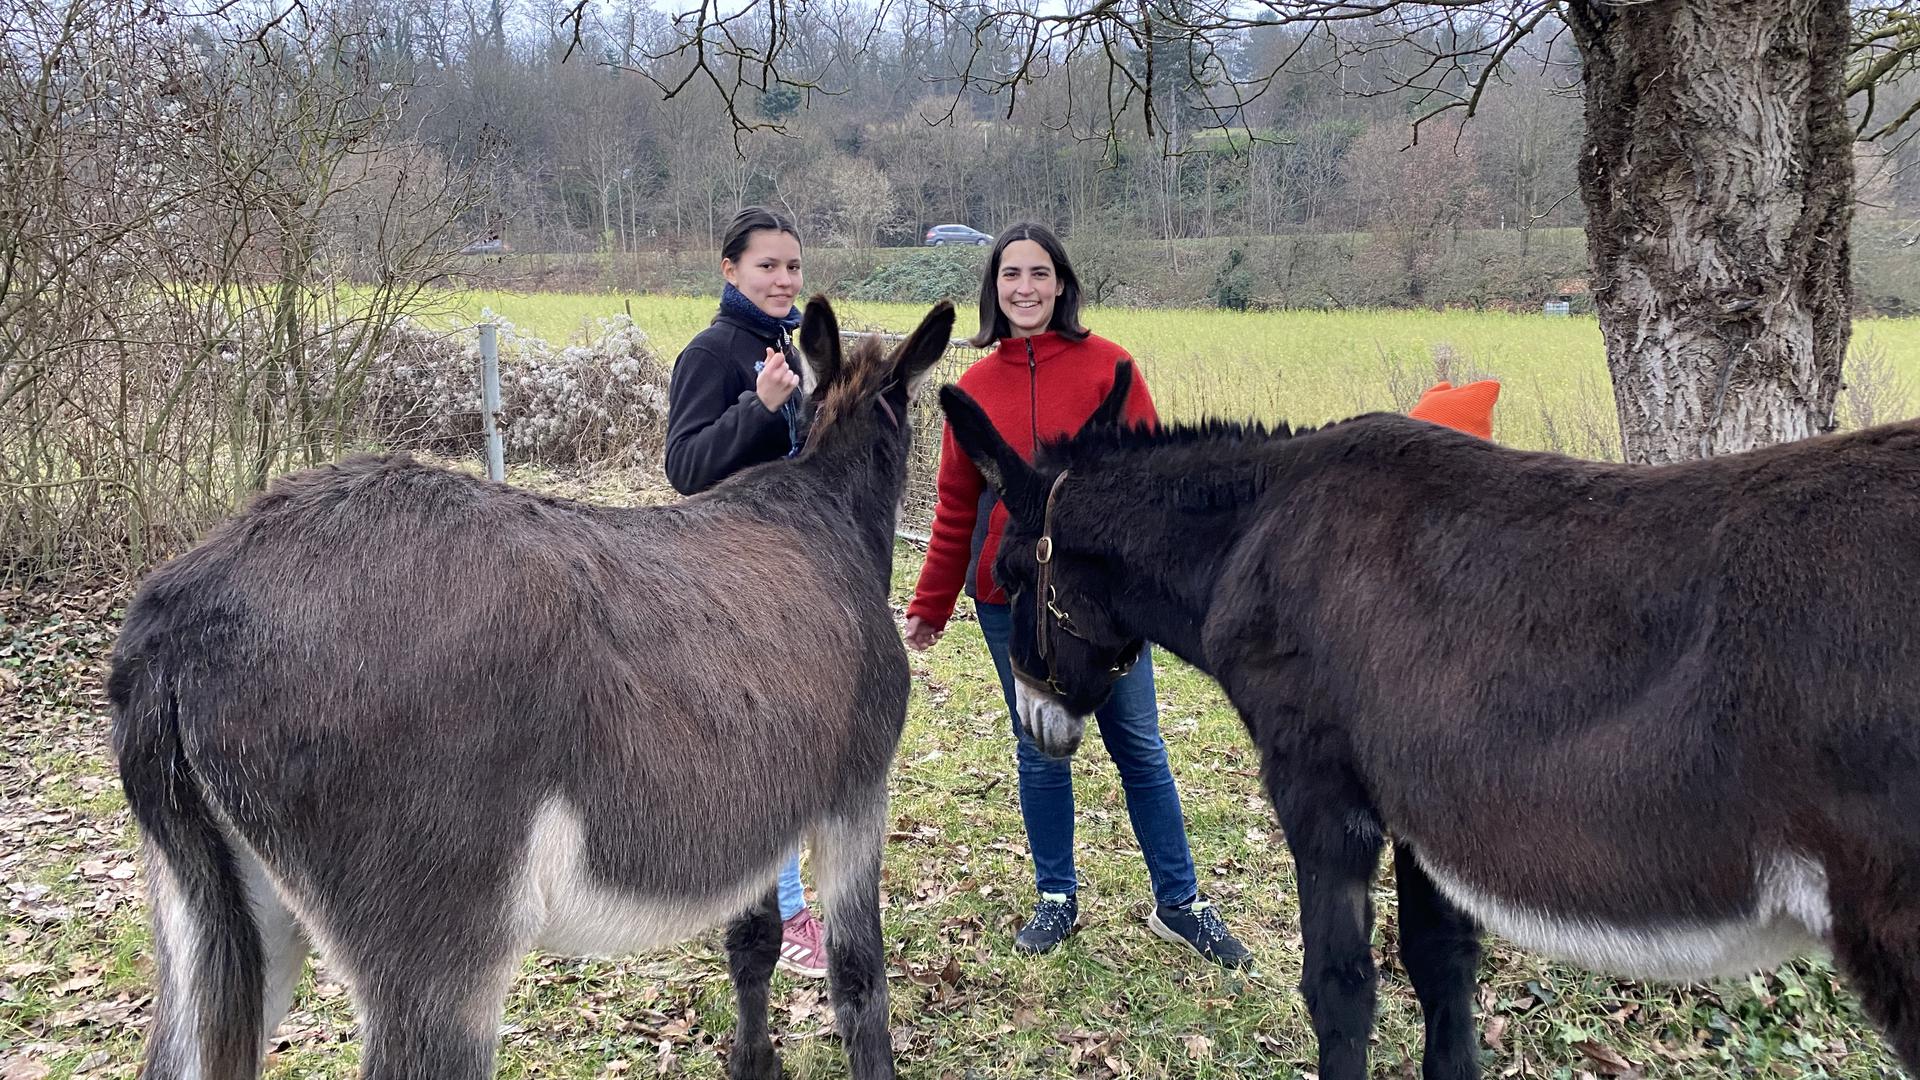 Eselszüchterin Katrin Dickgießer-Weiß und ihre Tochter Carla mit den Eseln Lucy und Kir. Sie sind vom Eselsvirus befallen, sagen sie. 